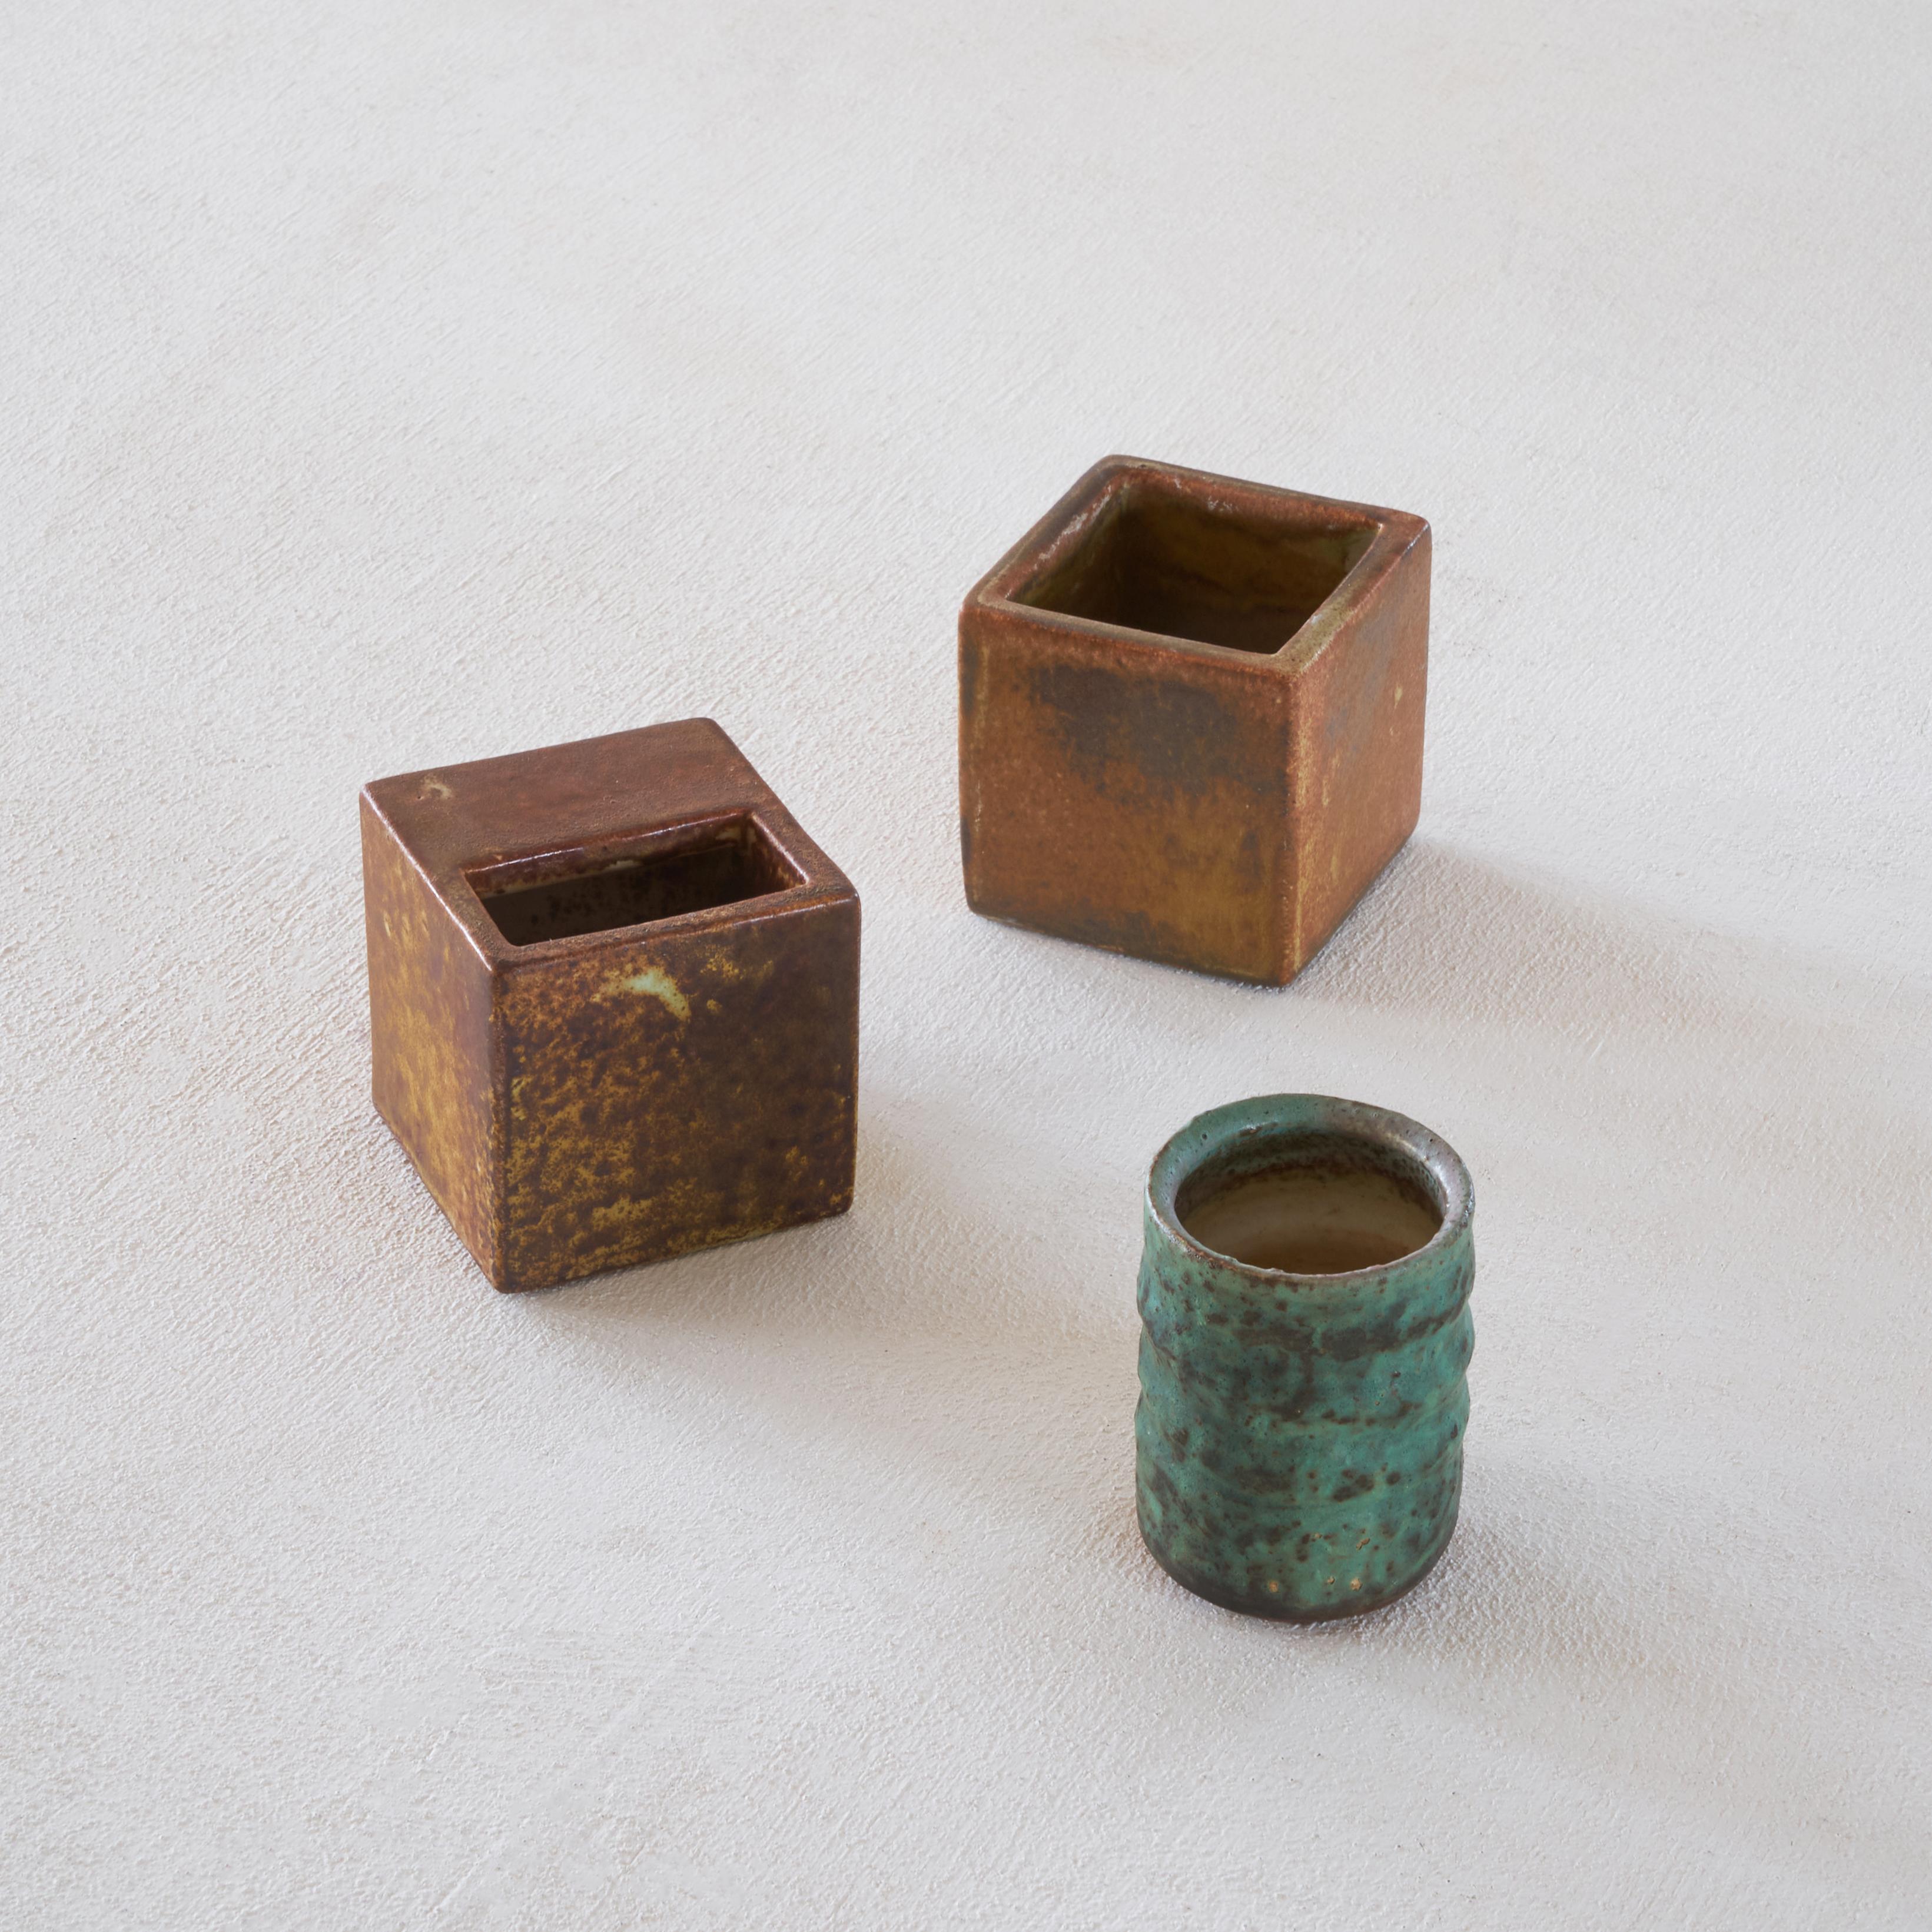 Magnifique ensemble de 3 vases en poterie géométrique hollandaise du milieu du siècle dernier par la célèbre famille Mobach. 

Ensemble de vases très décoratifs. Ensemble, ils forment un trio magnifique et géométrique. Les trois vases de formes